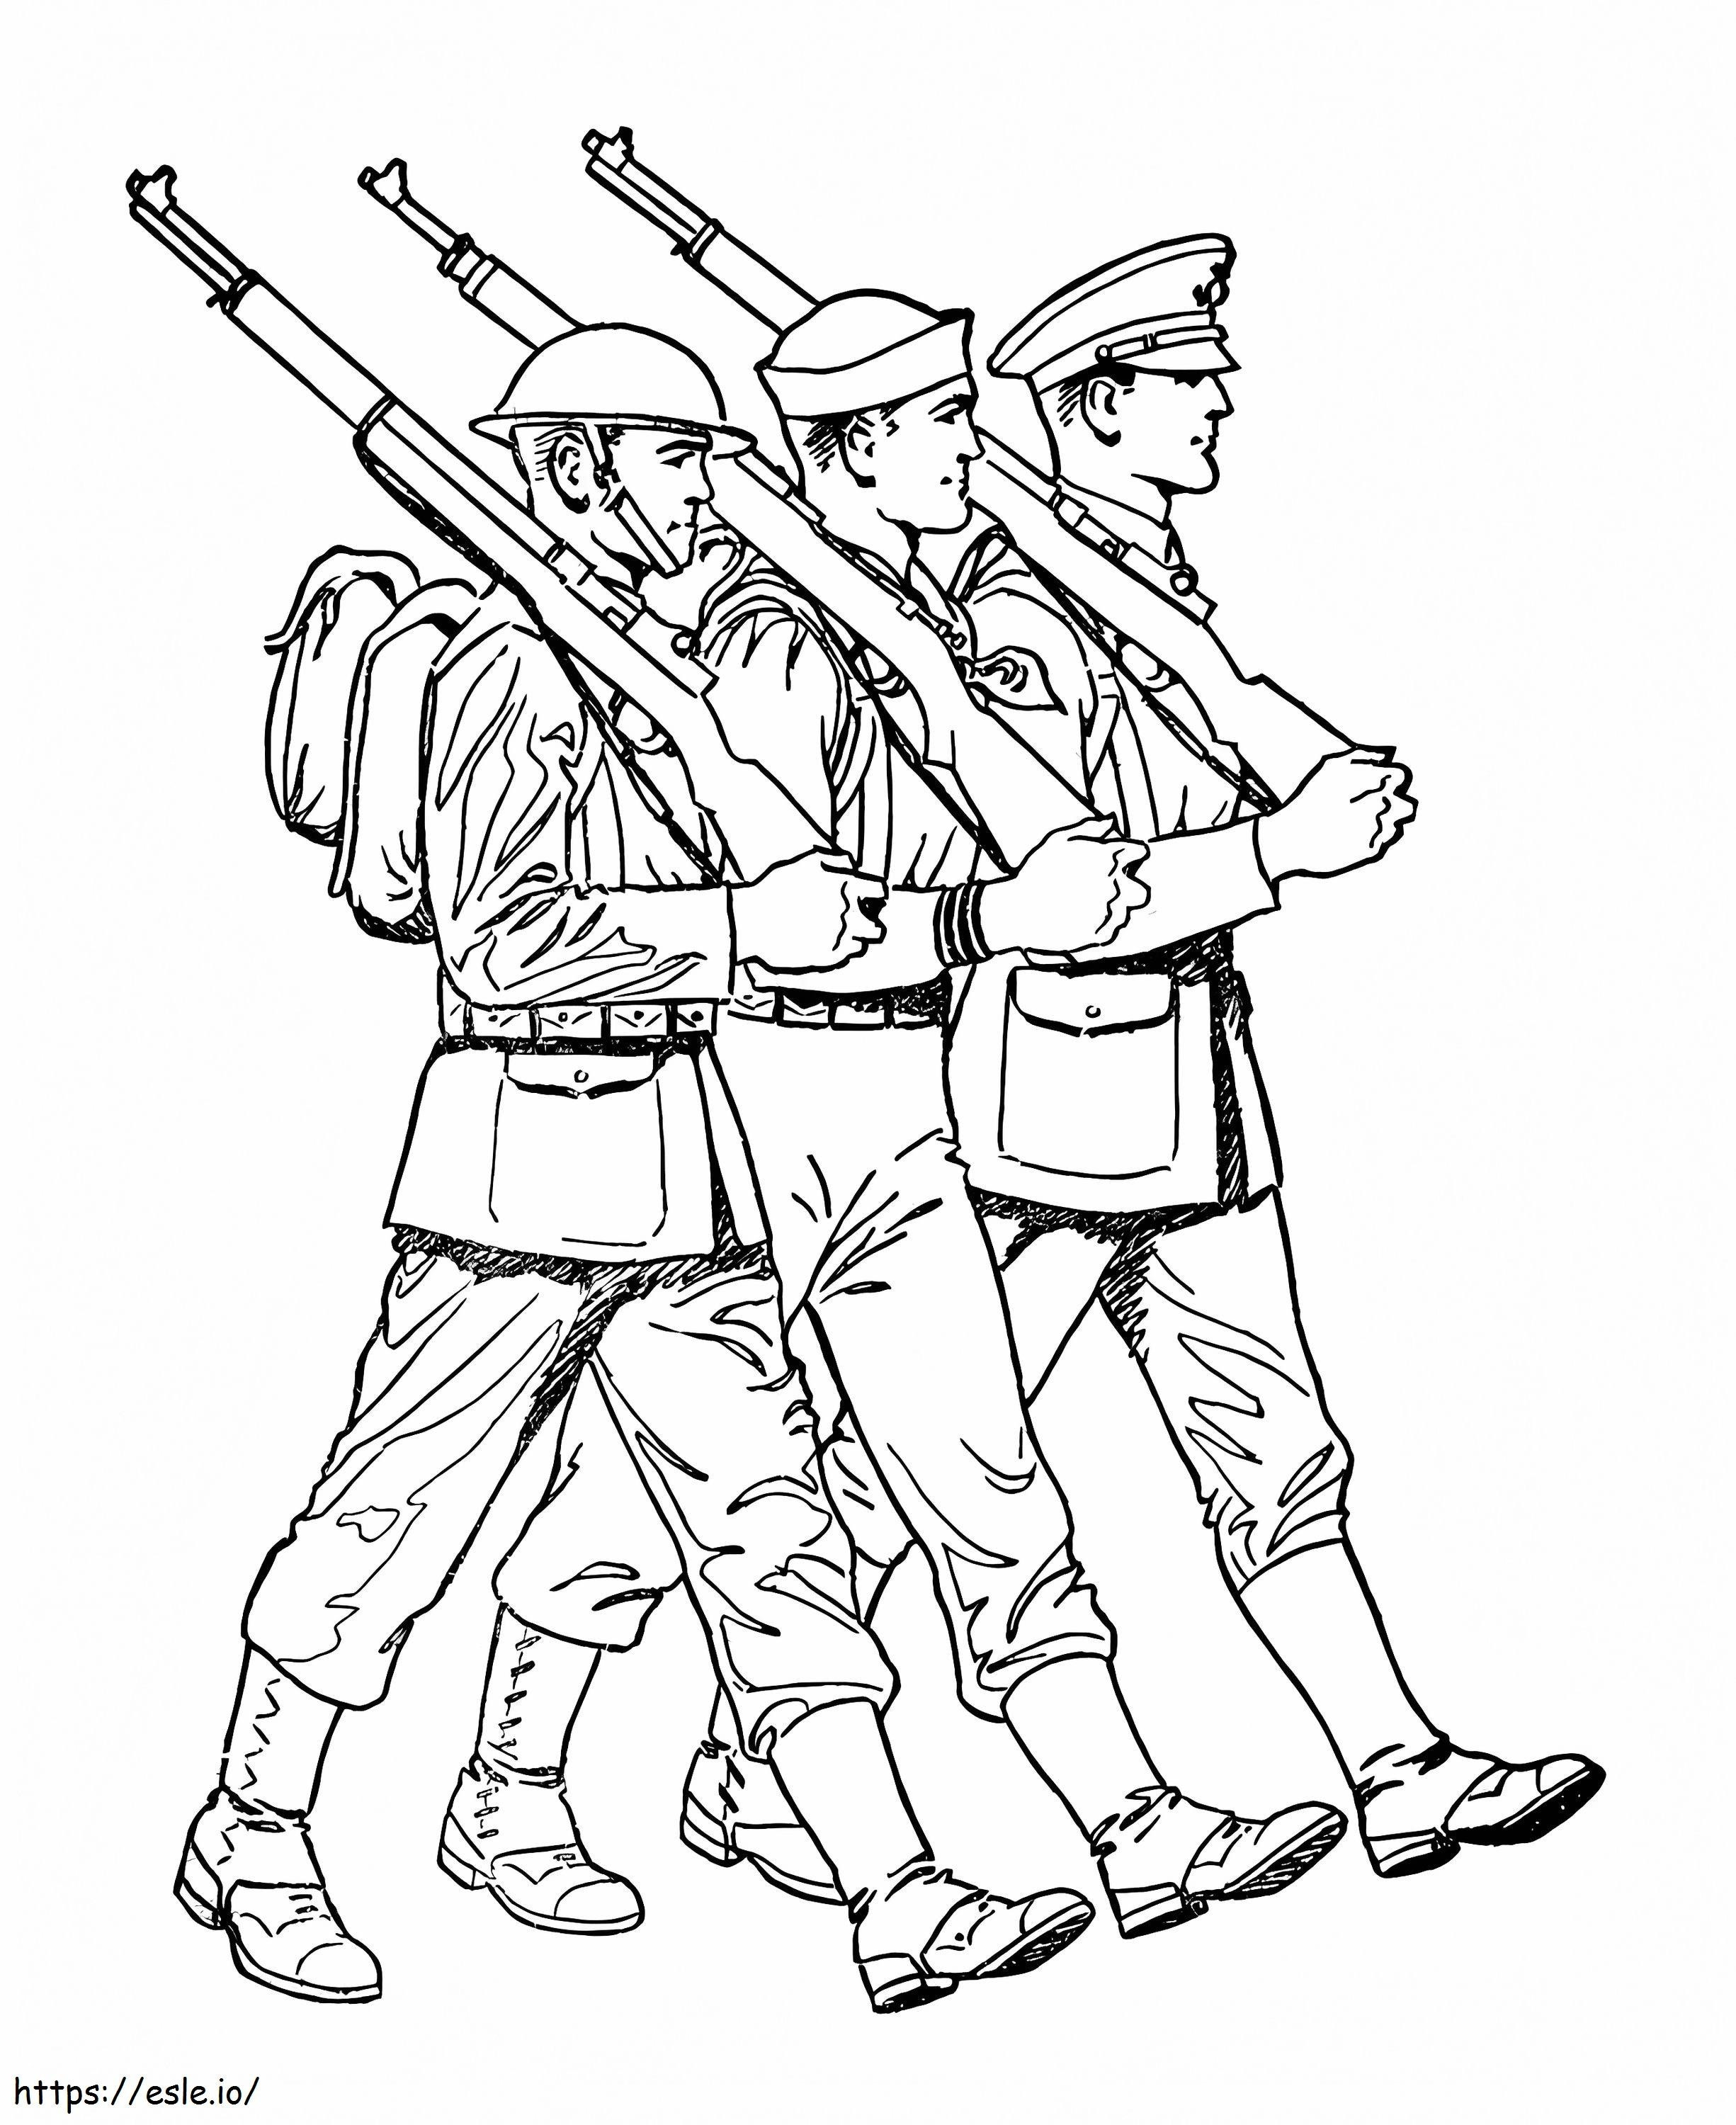 Üç Asker boyama